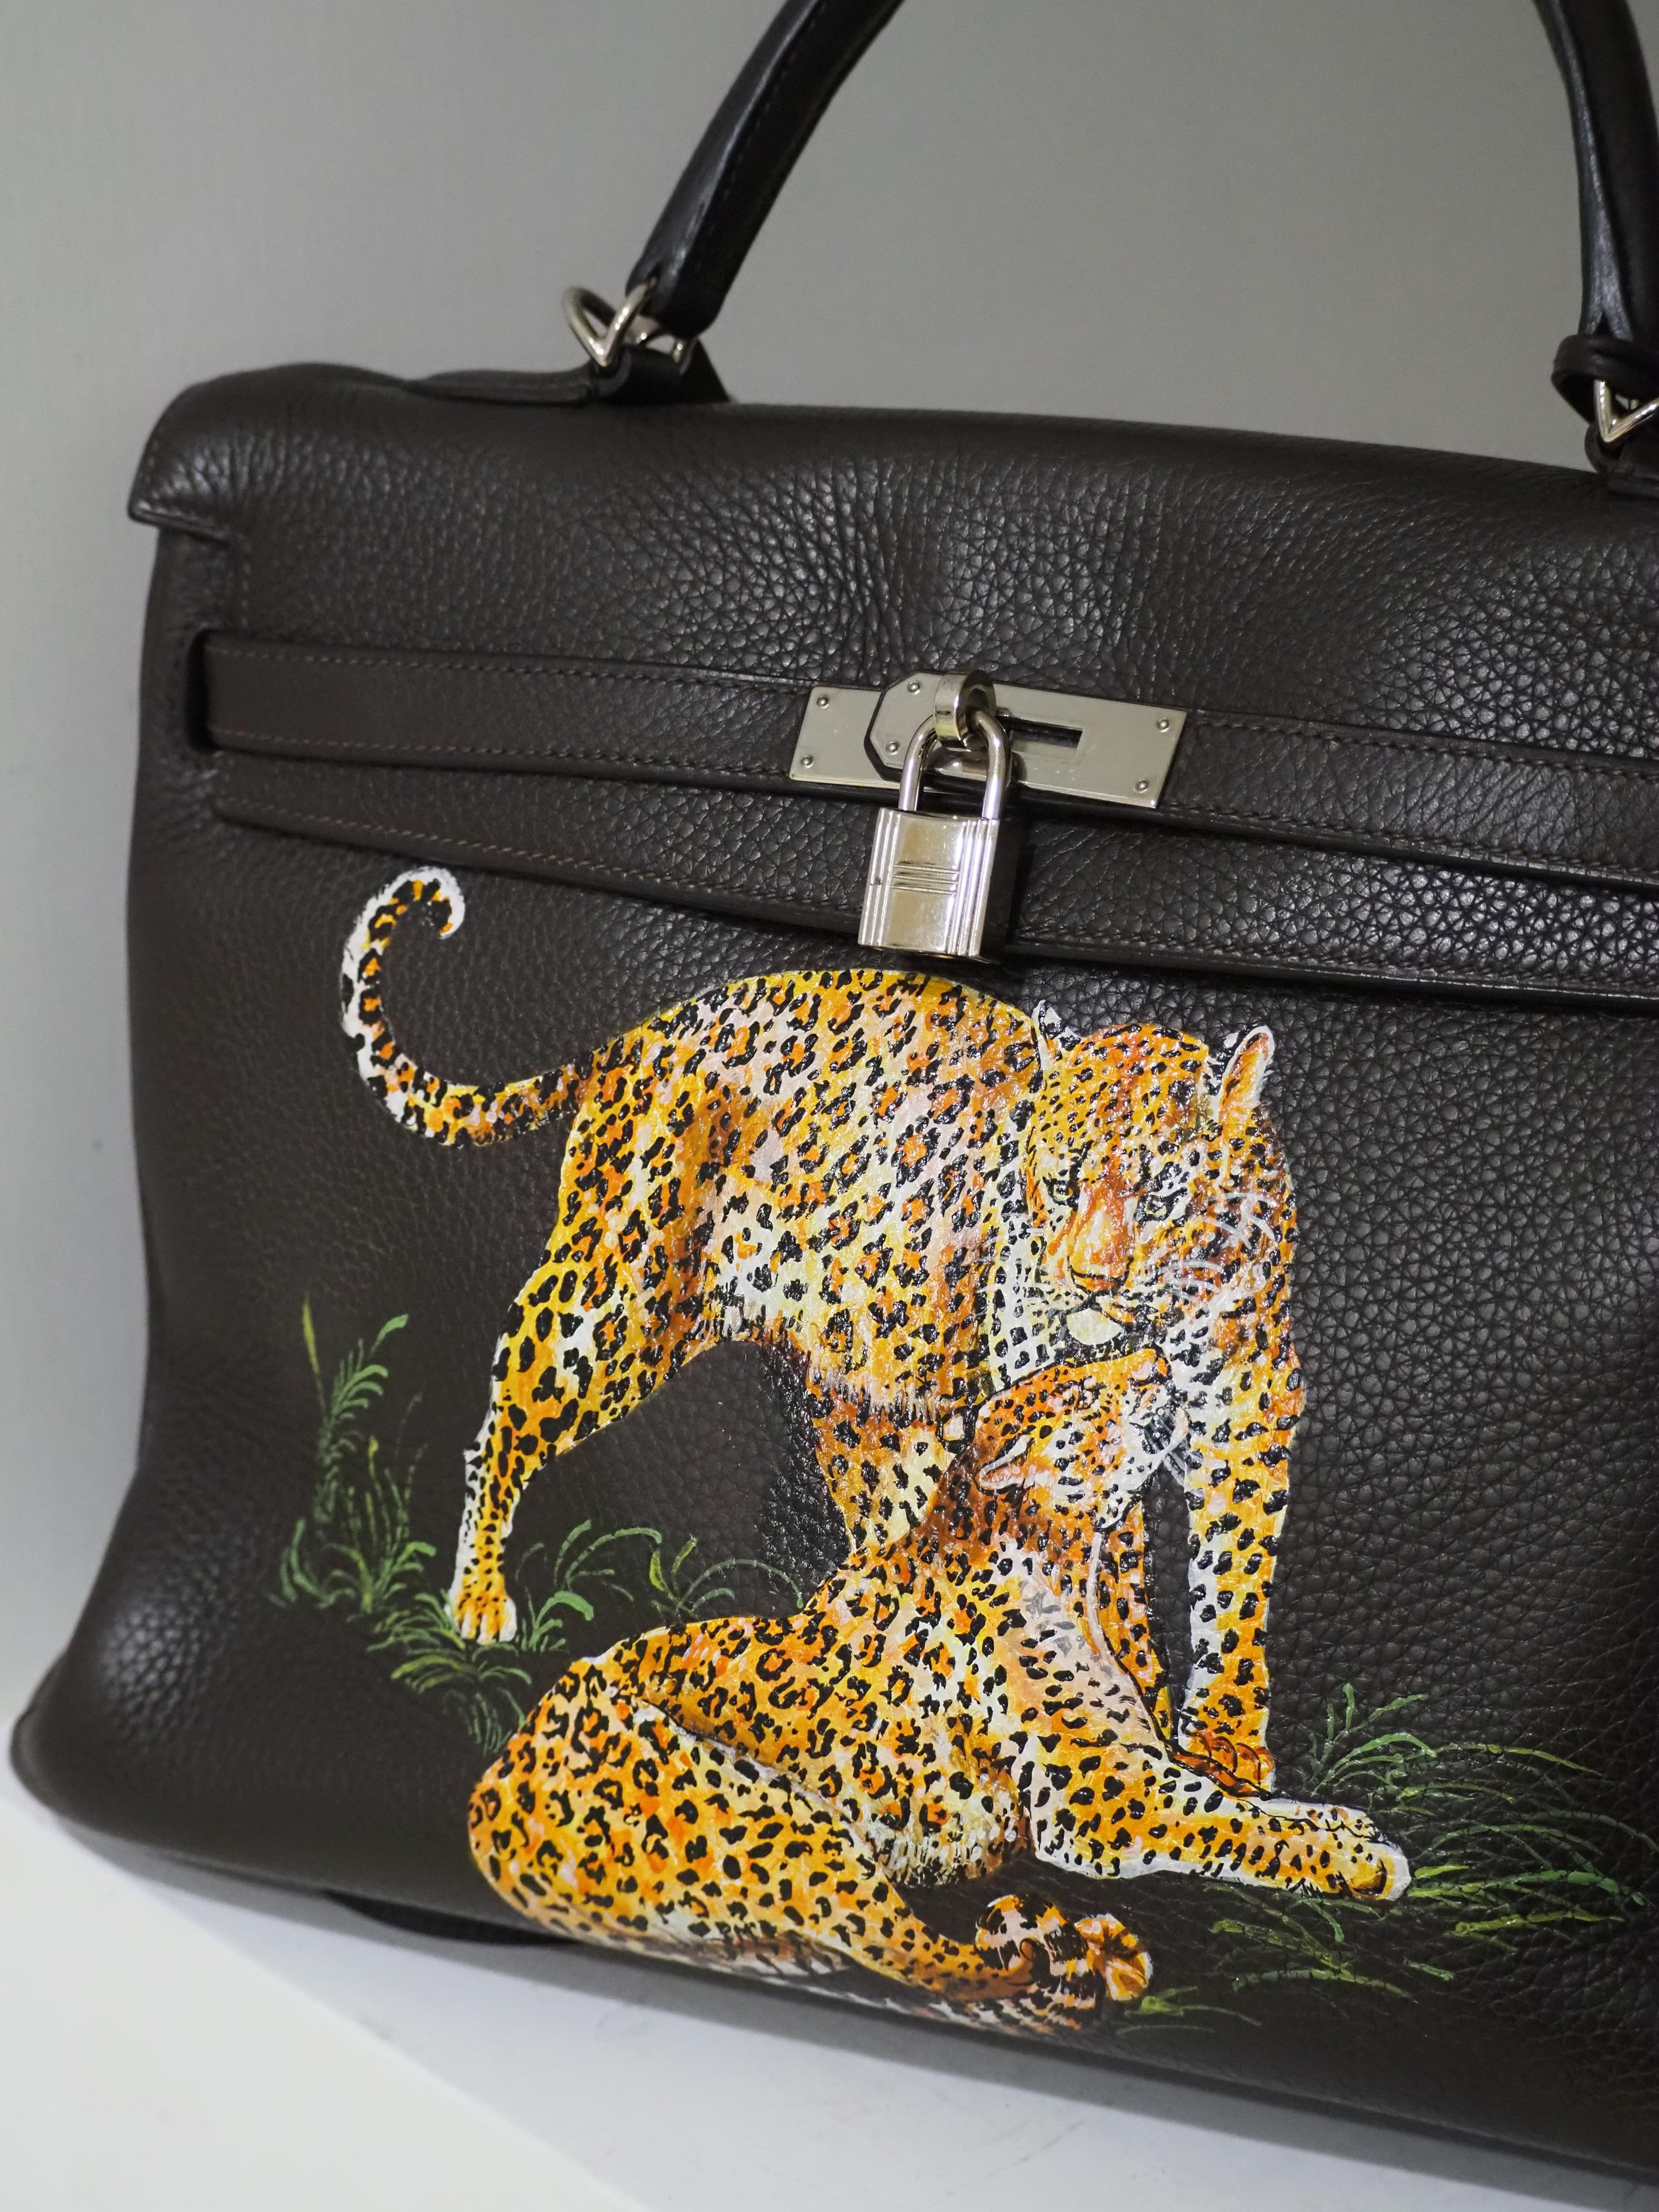 Hermès 35 Brown leather handpainted handbag shoulder bag 7